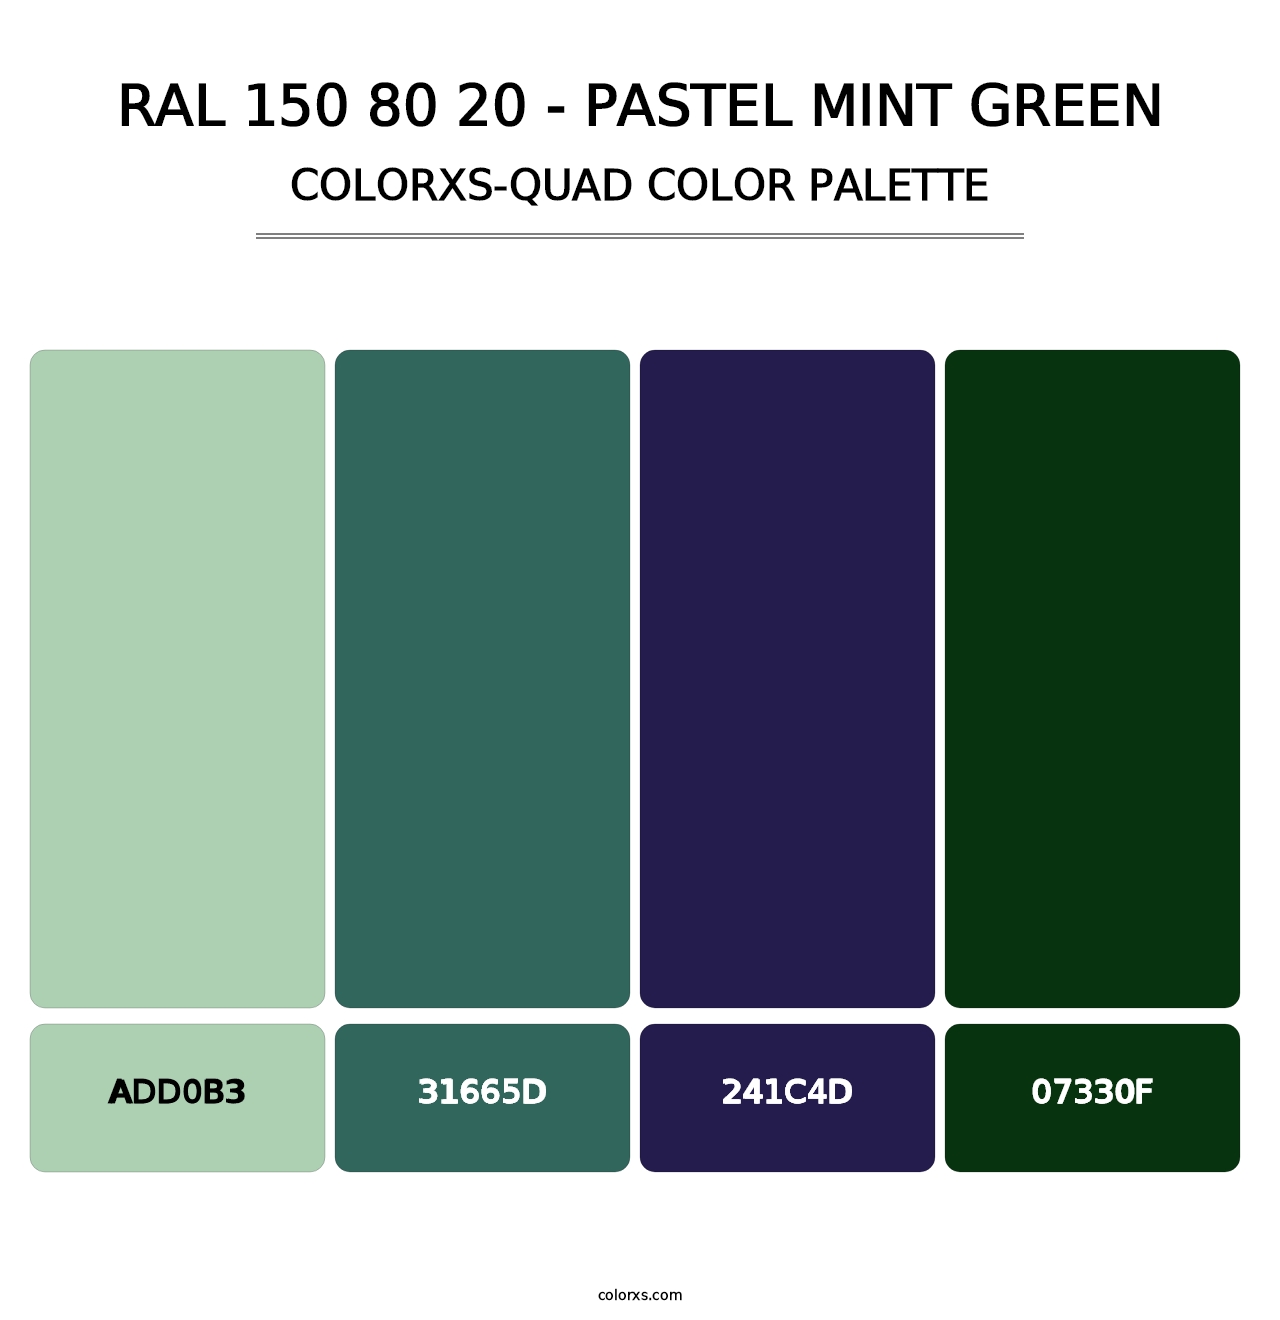 RAL 150 80 20 - Pastel Mint Green - Colorxs Quad Palette